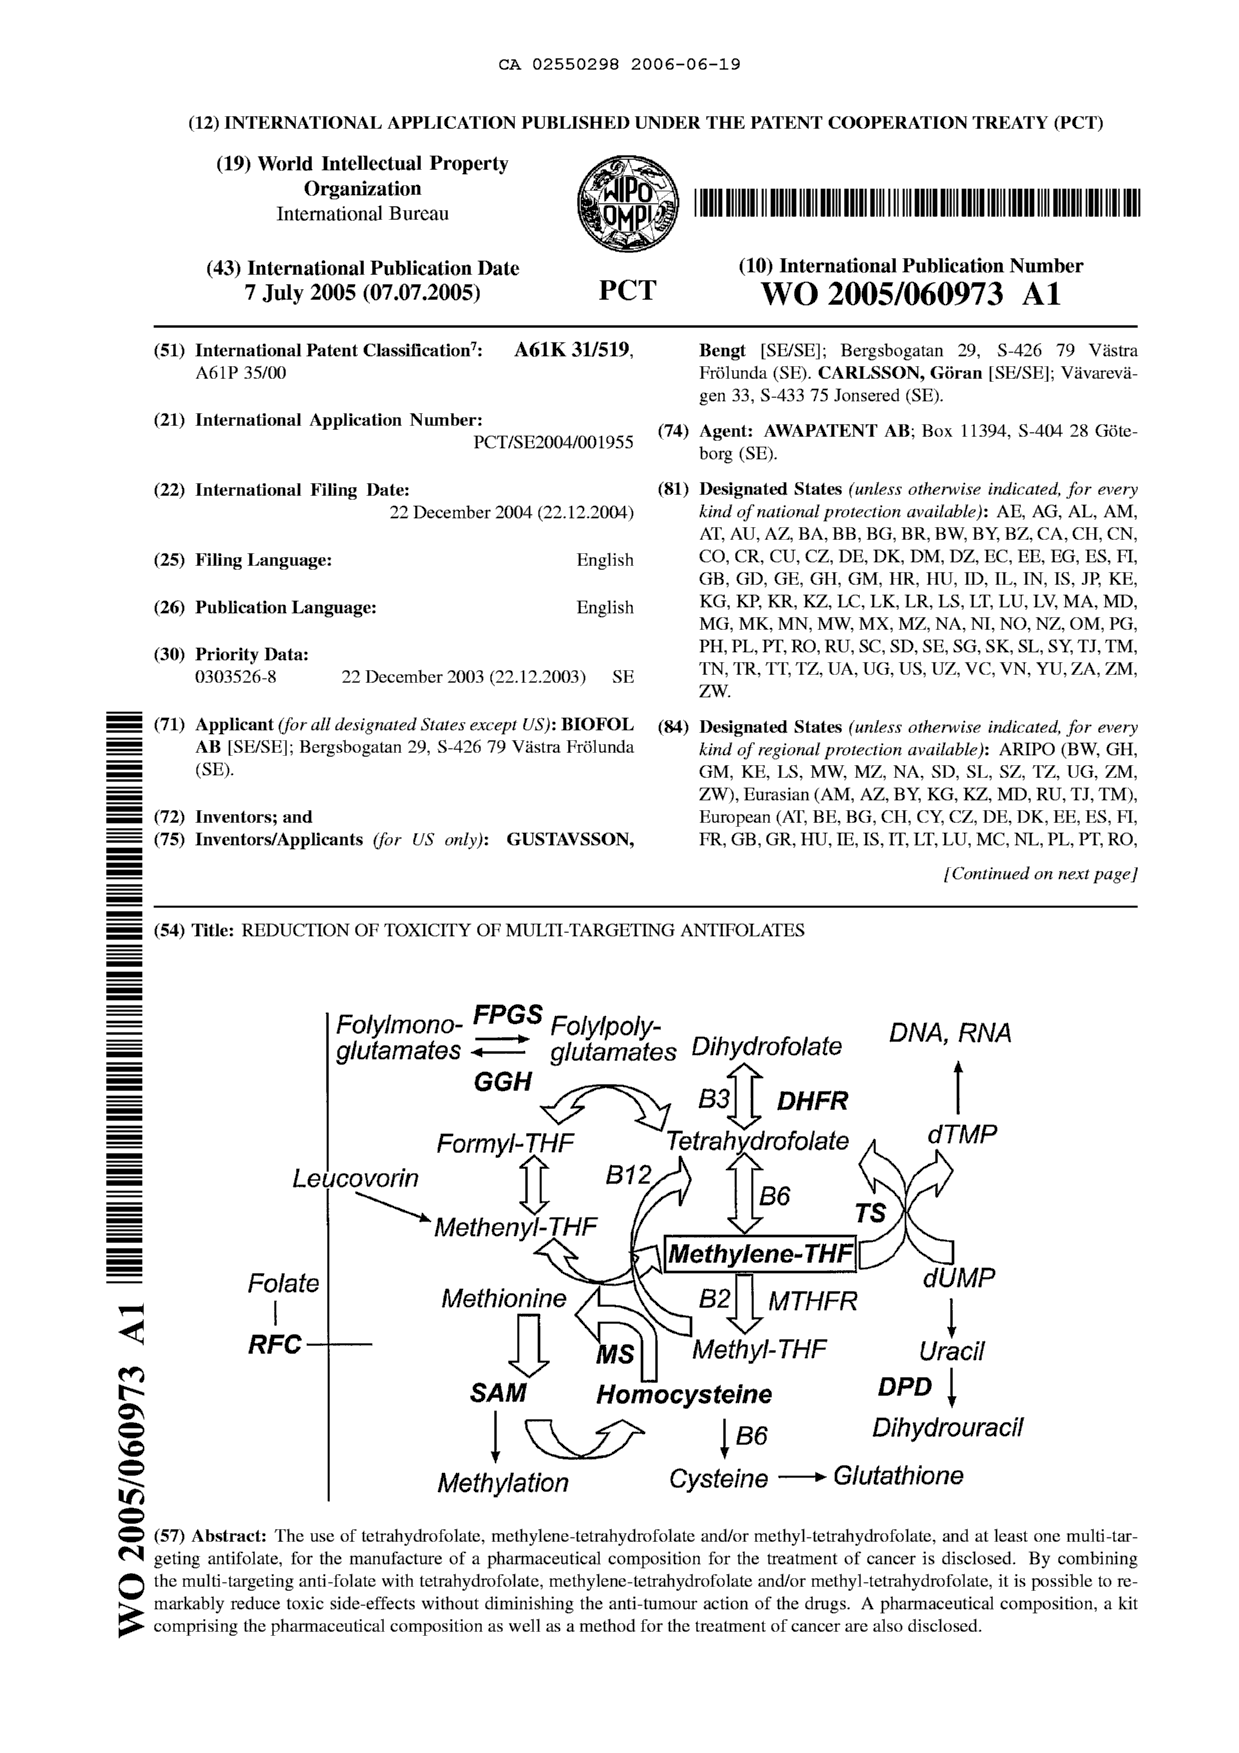 Document de brevet canadien 2550298. Abrégé 20060619. Image 1 de 2